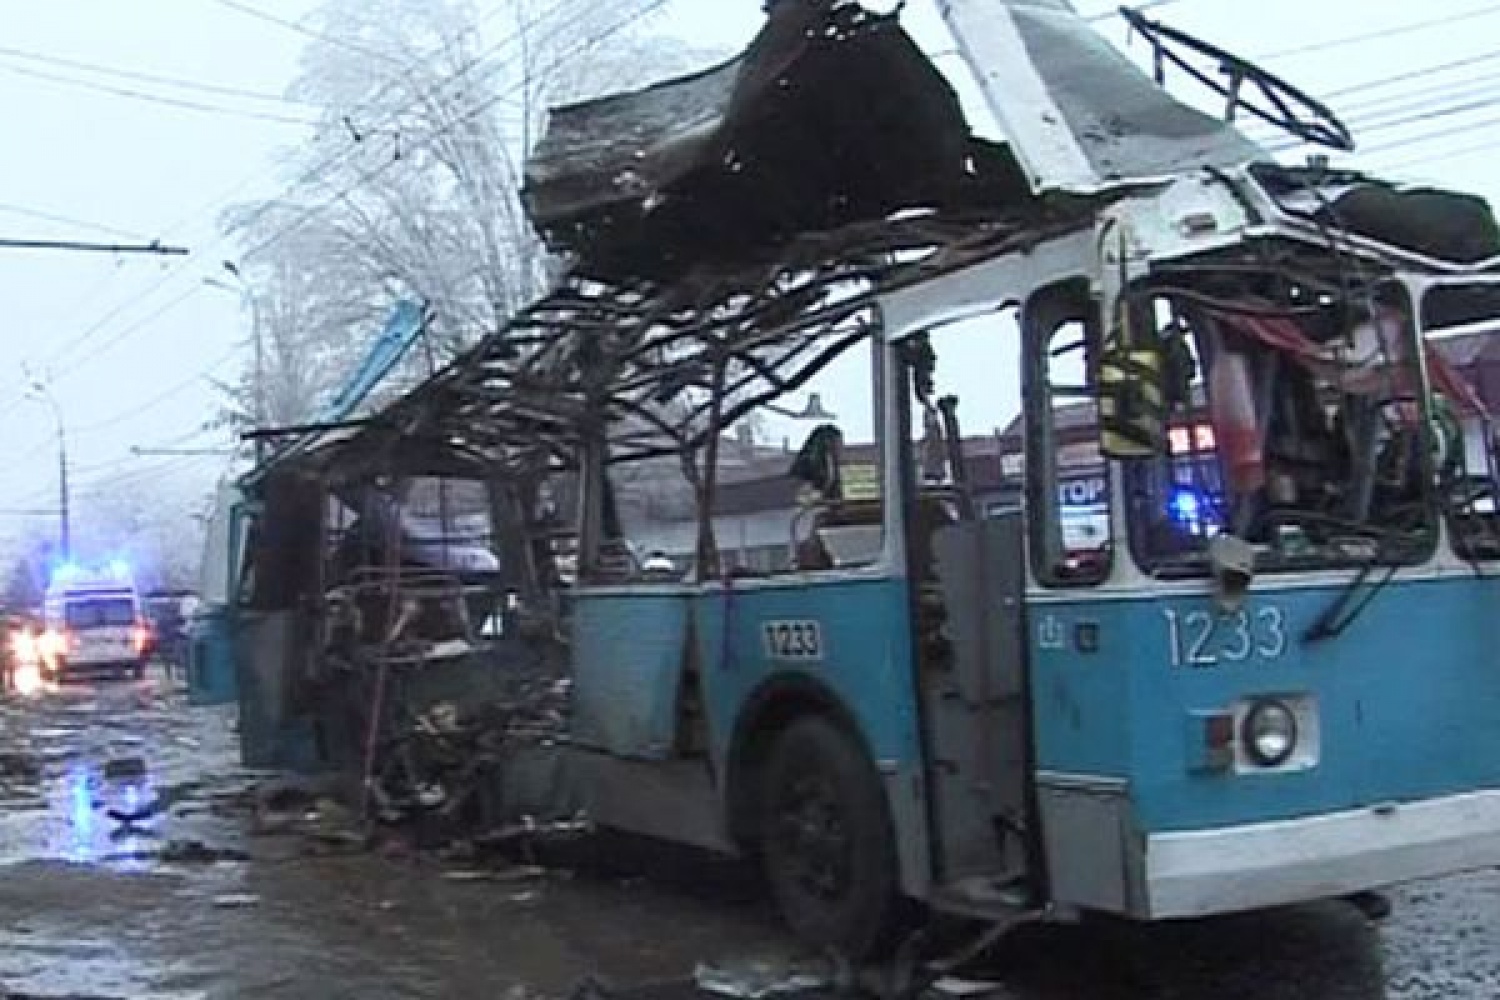 Теракты в ближайшее время. 30 Декабря 2013 год Волгоград взрыв троллейбуса. Взорванный троллейбус в Волгограде. Теракт 30 декабря в Волгограде. Взрыв троллейбуса в Волгограде.